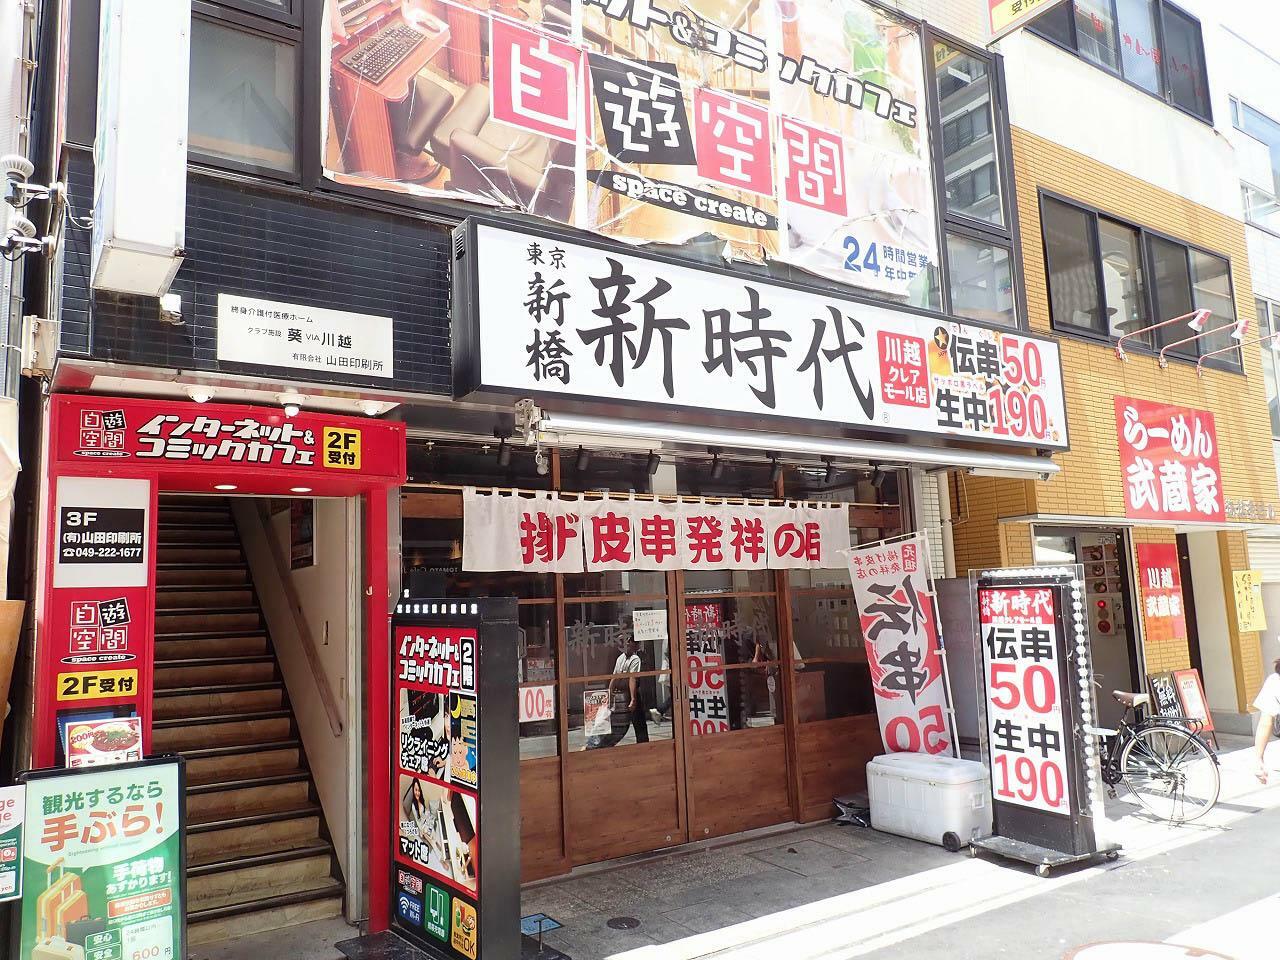 こちらは「川越クレアモール店」で西武新宿線・本川越駅から徒歩約2分です